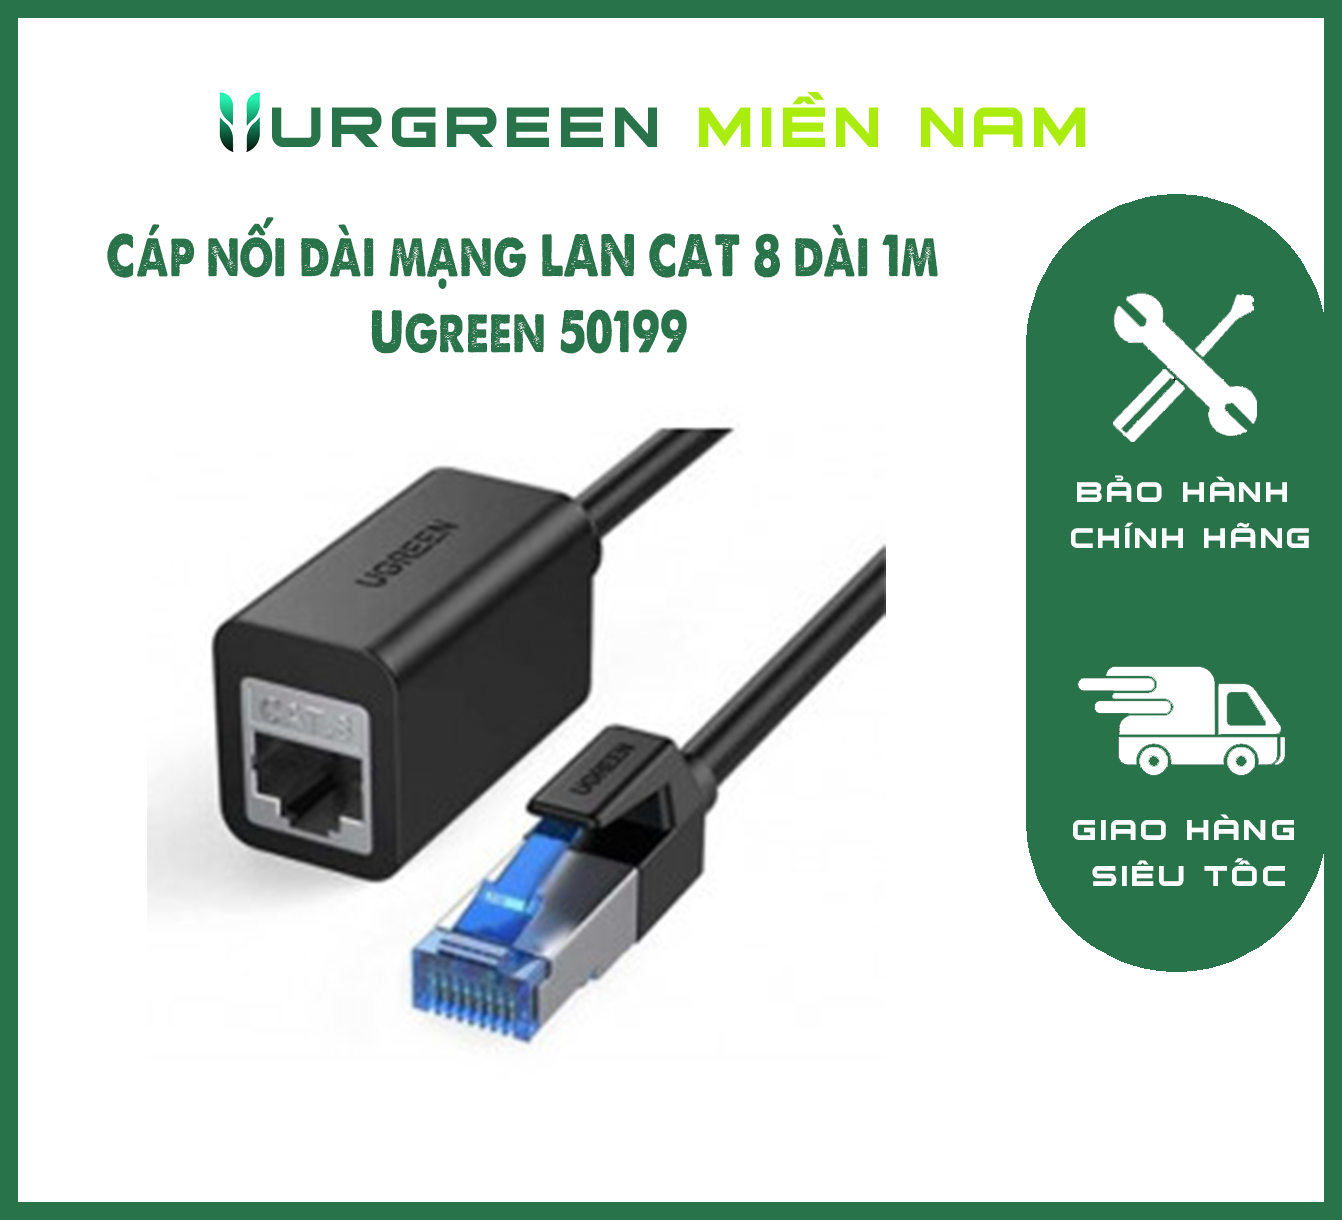 Cáp nối dài mạng LAN CAT 8 dài 1m Ugreen 50199